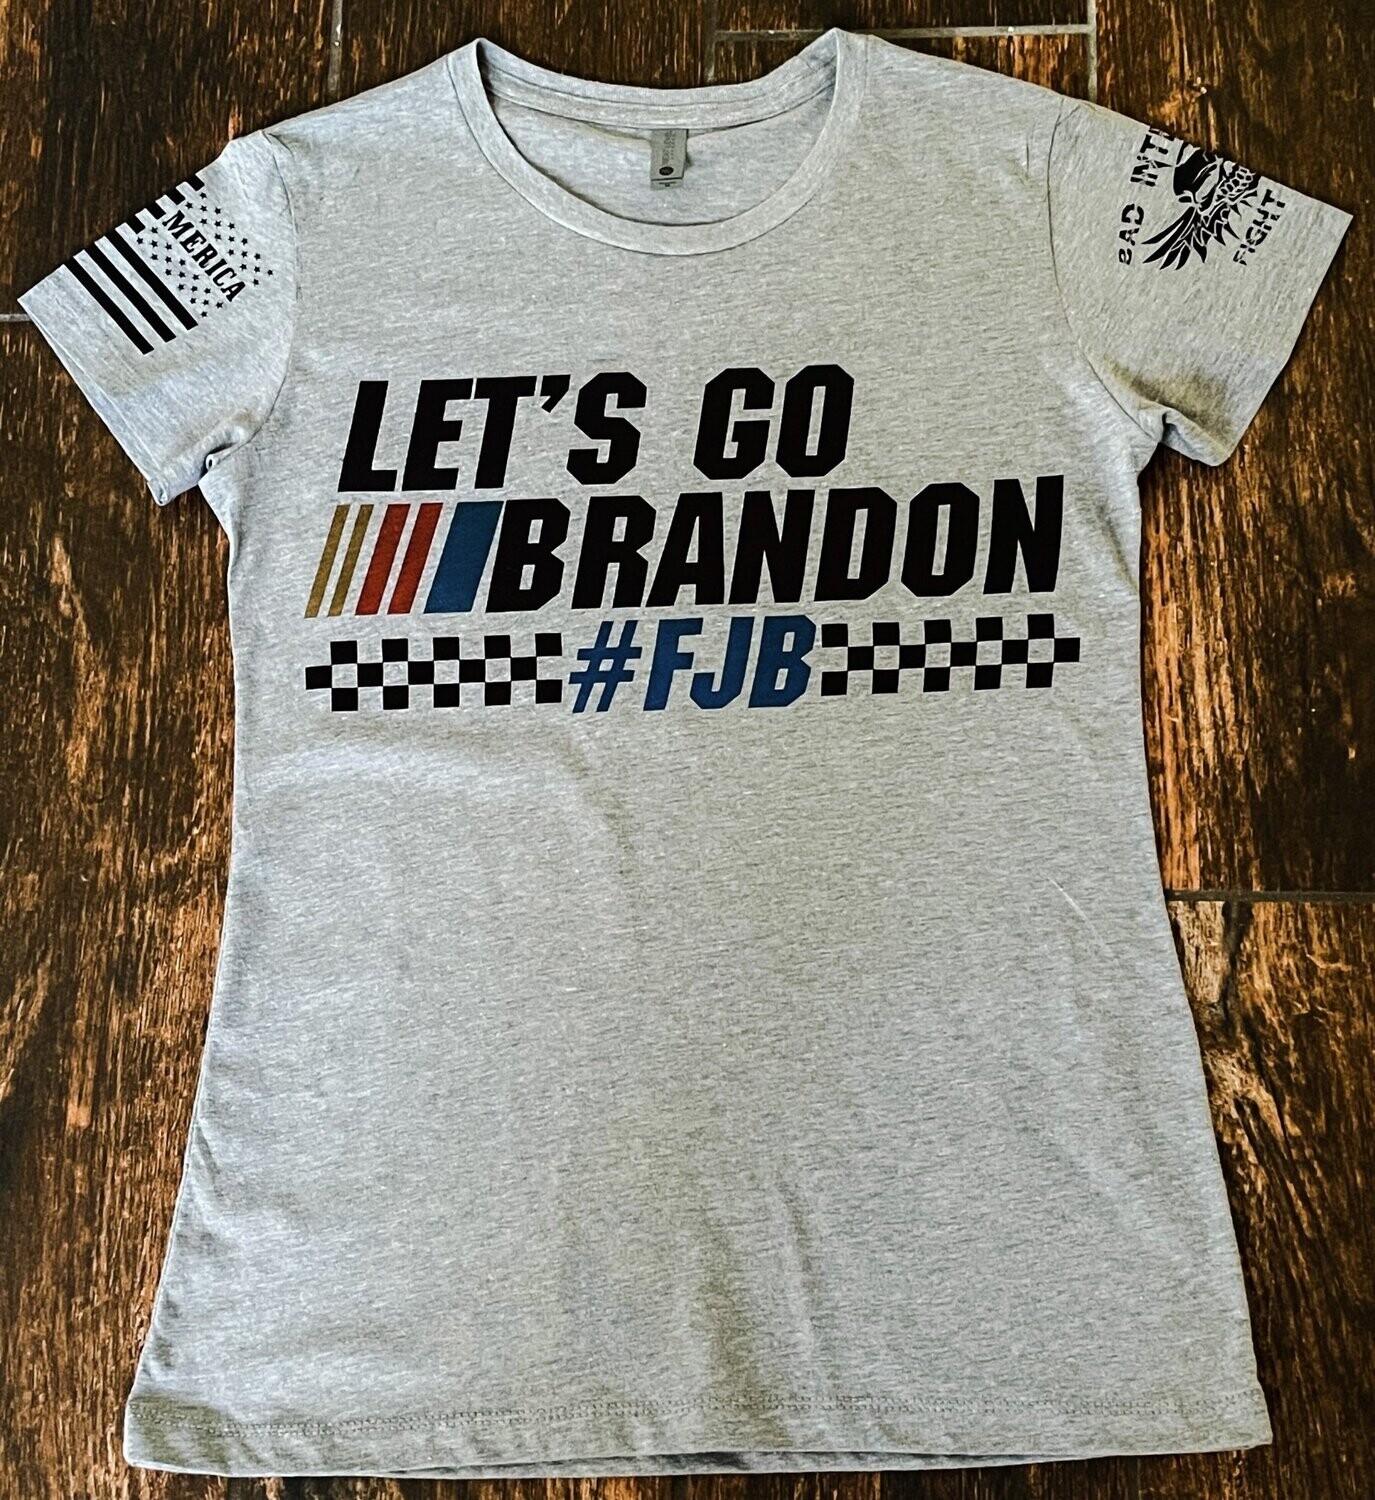 Let's Go Brandon FJB